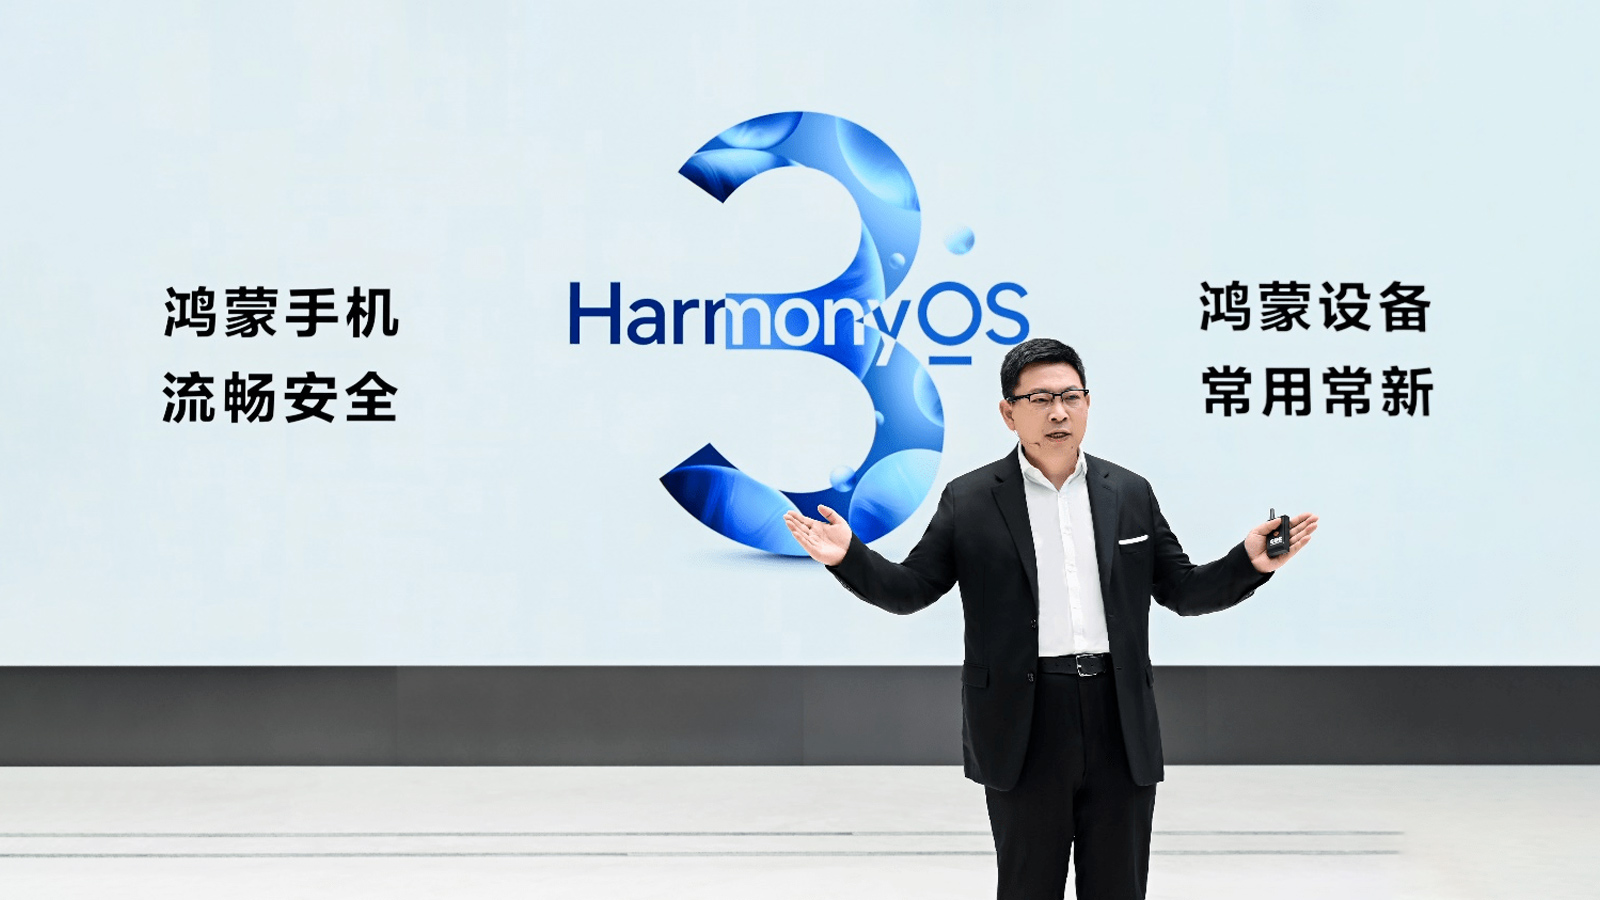 HarmonyOS 3.0 ra mắt và đây là danh sách các thiết bị có thể trải nghiệm sớm